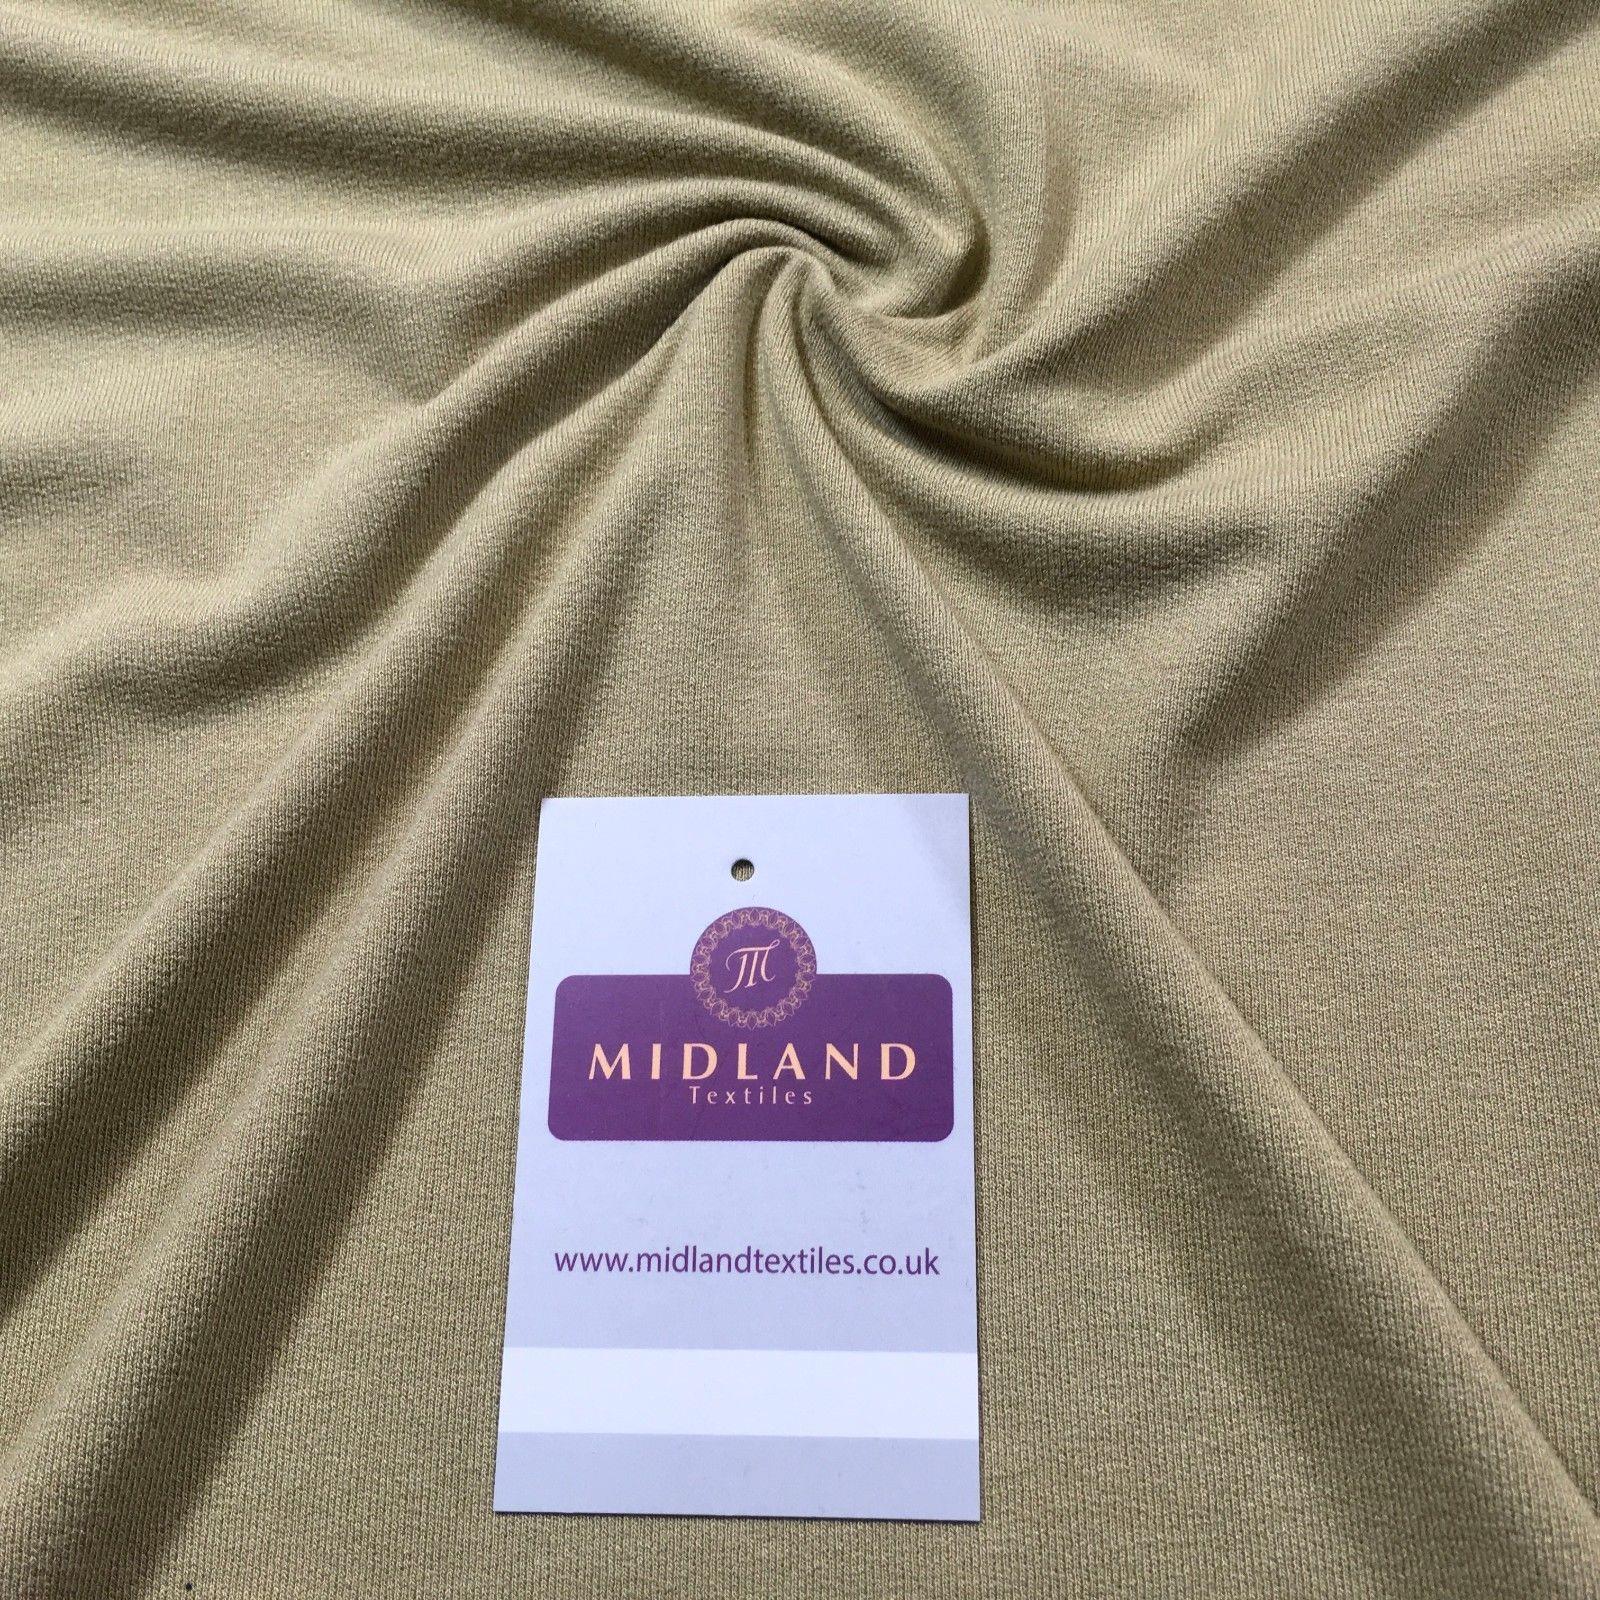 Sand Plain medium weight textured Cotton Jersey Dress fabric 58" M720-42 Mtex